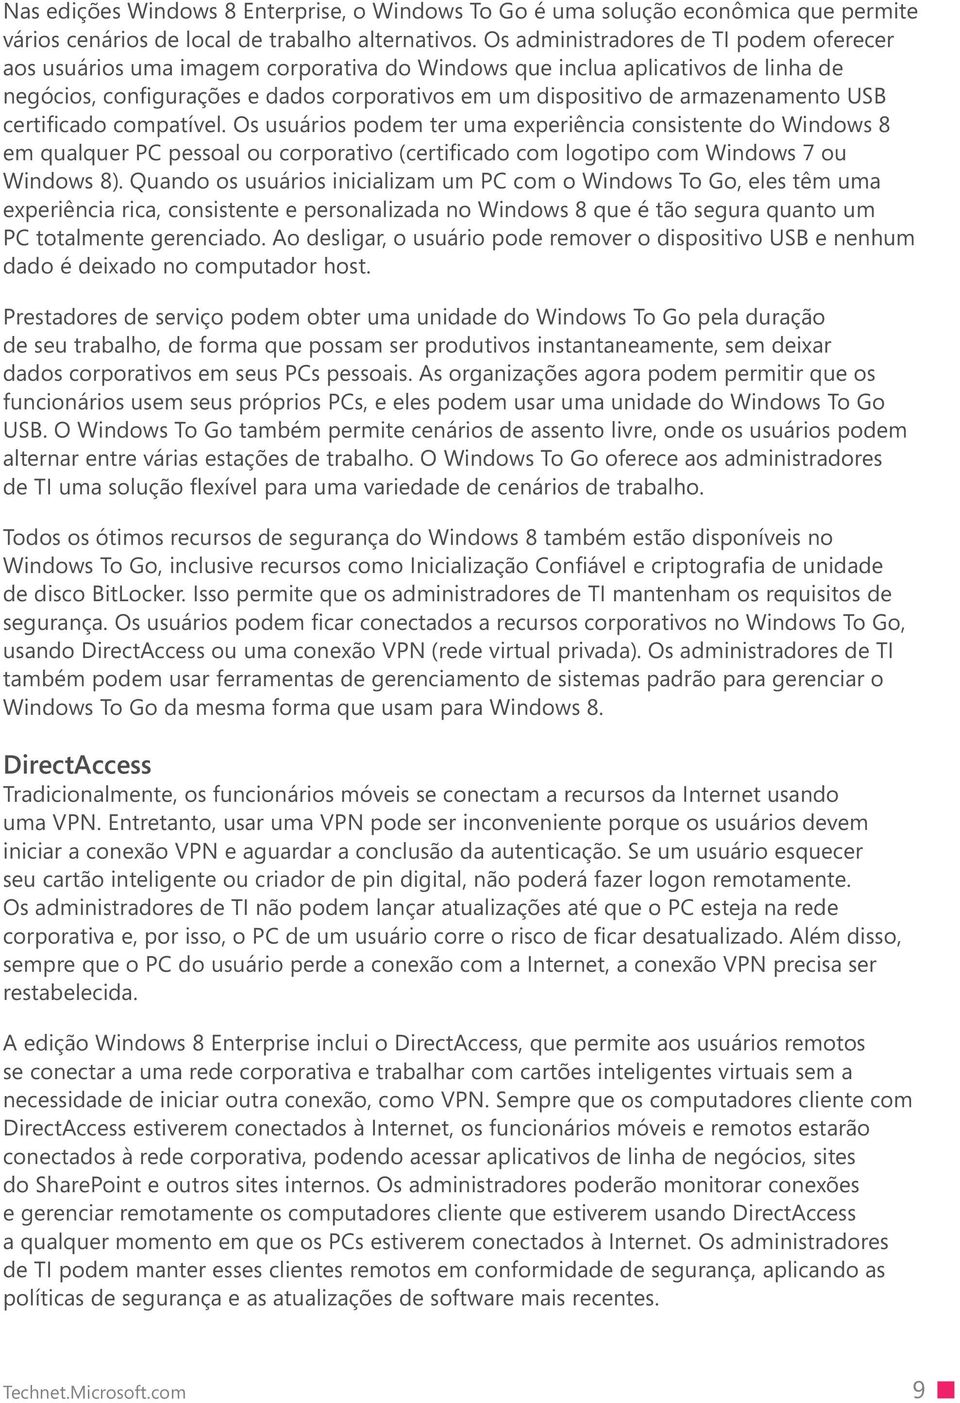 armazenamento USB certificado compatível. Os usuários podem ter uma experiência consistente do Windows 8 em qualquer PC pessoal ou corporativo (certificado com logotipo com Windows 7 ou Windows 8).